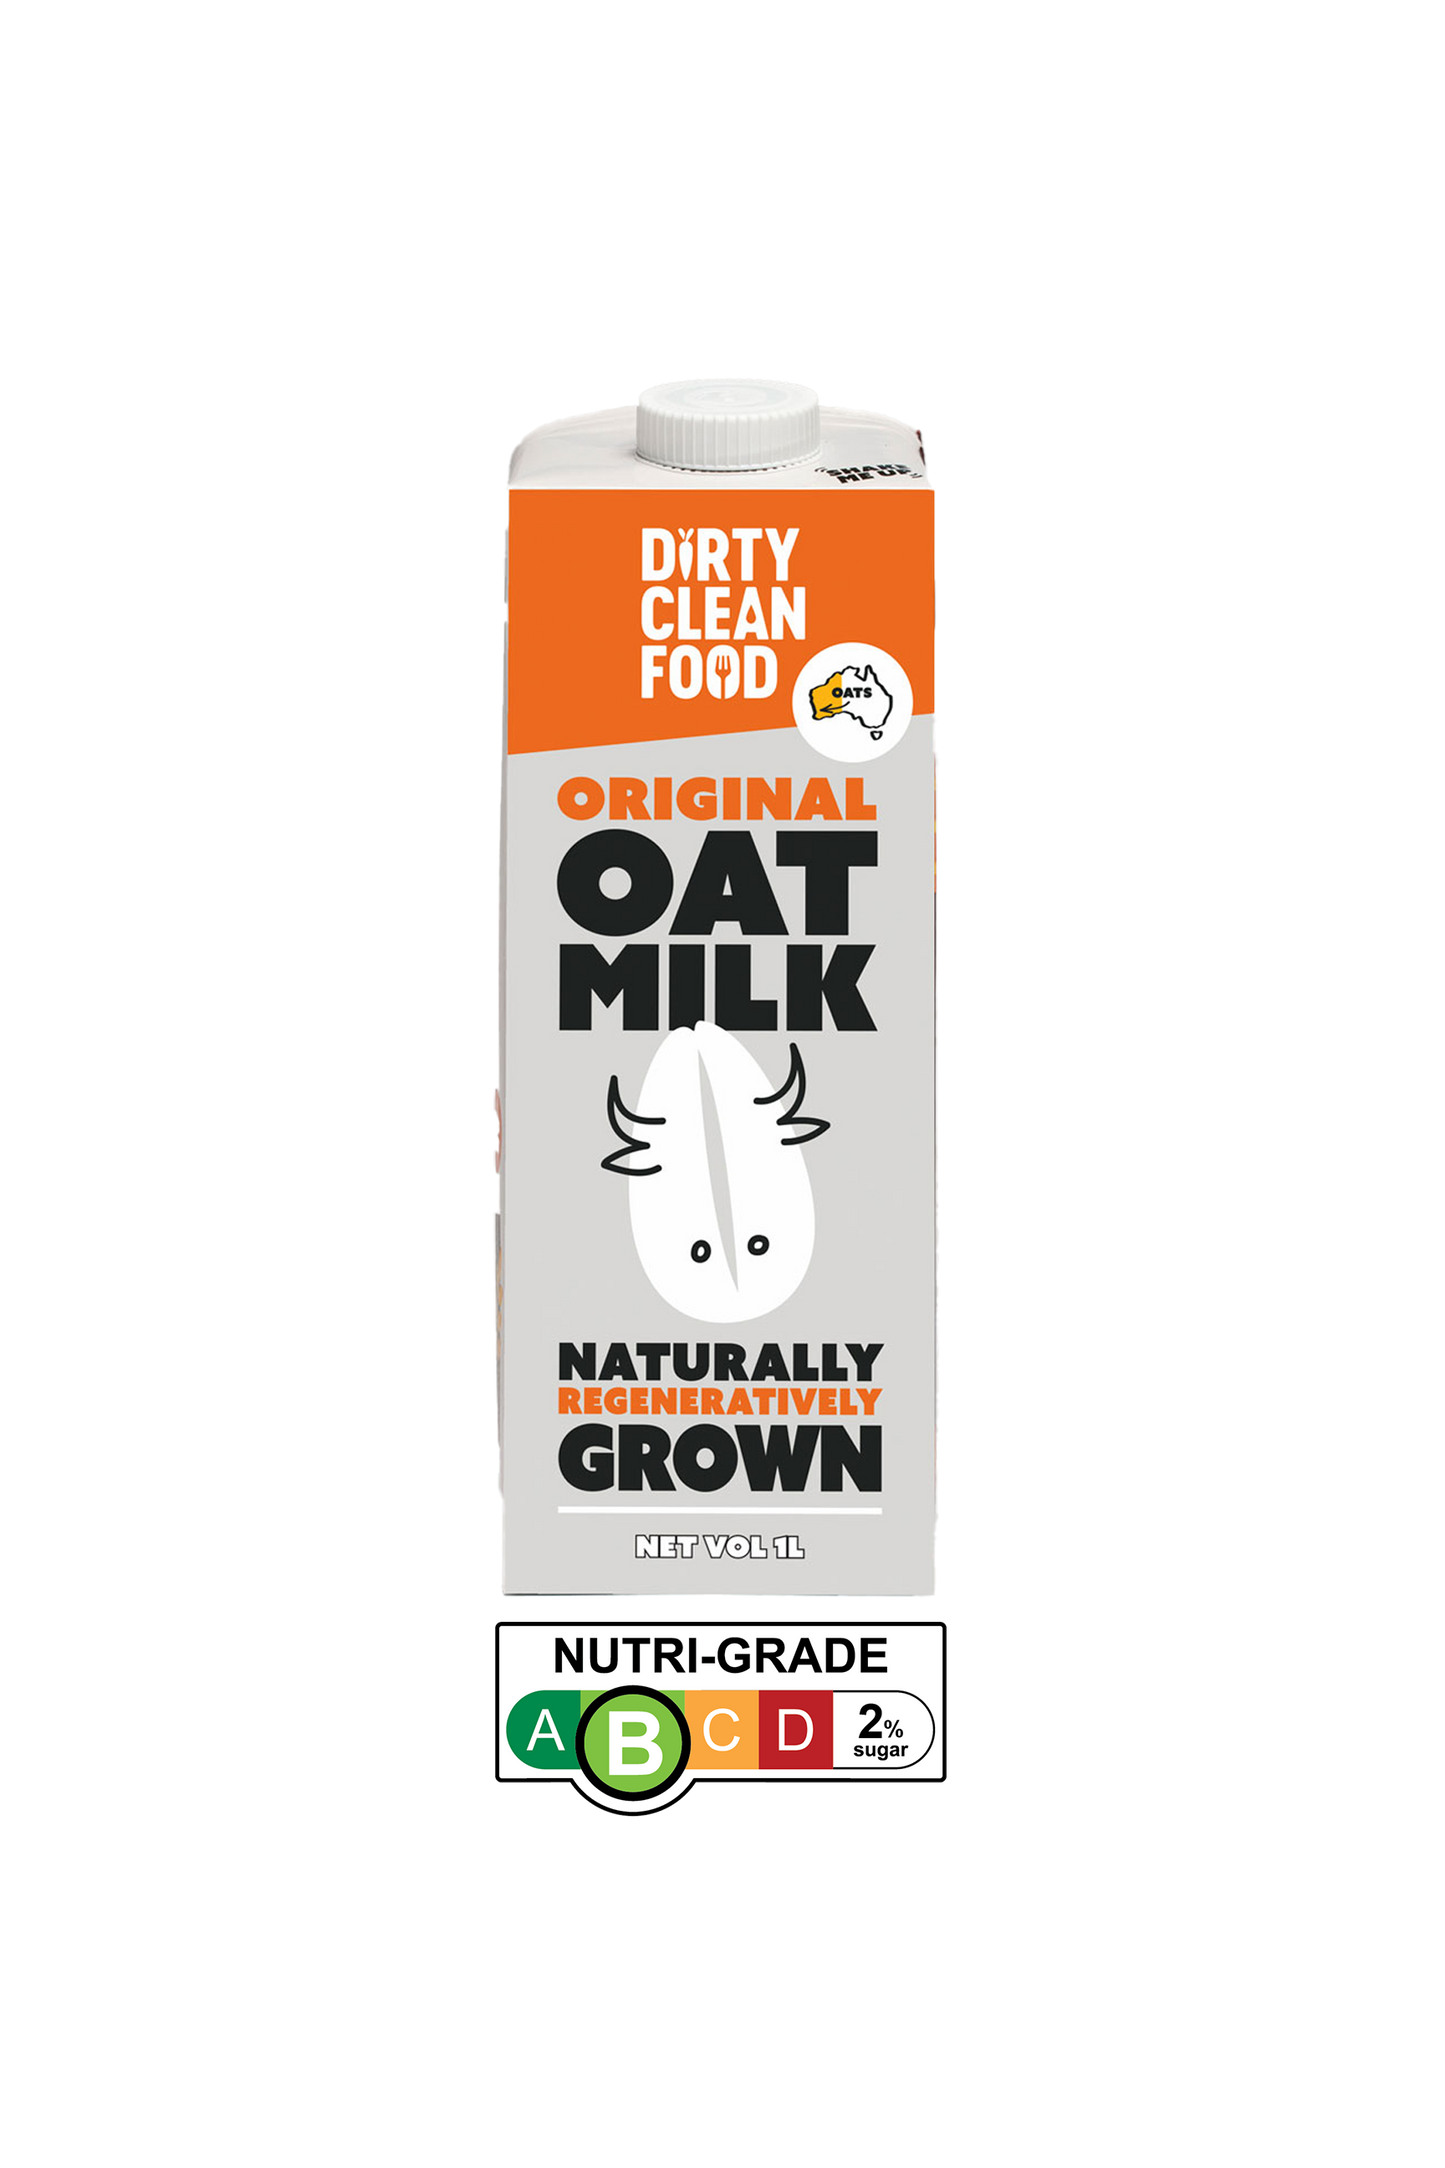 Dirty Clean Food - Original Oat Milk (6*1L)